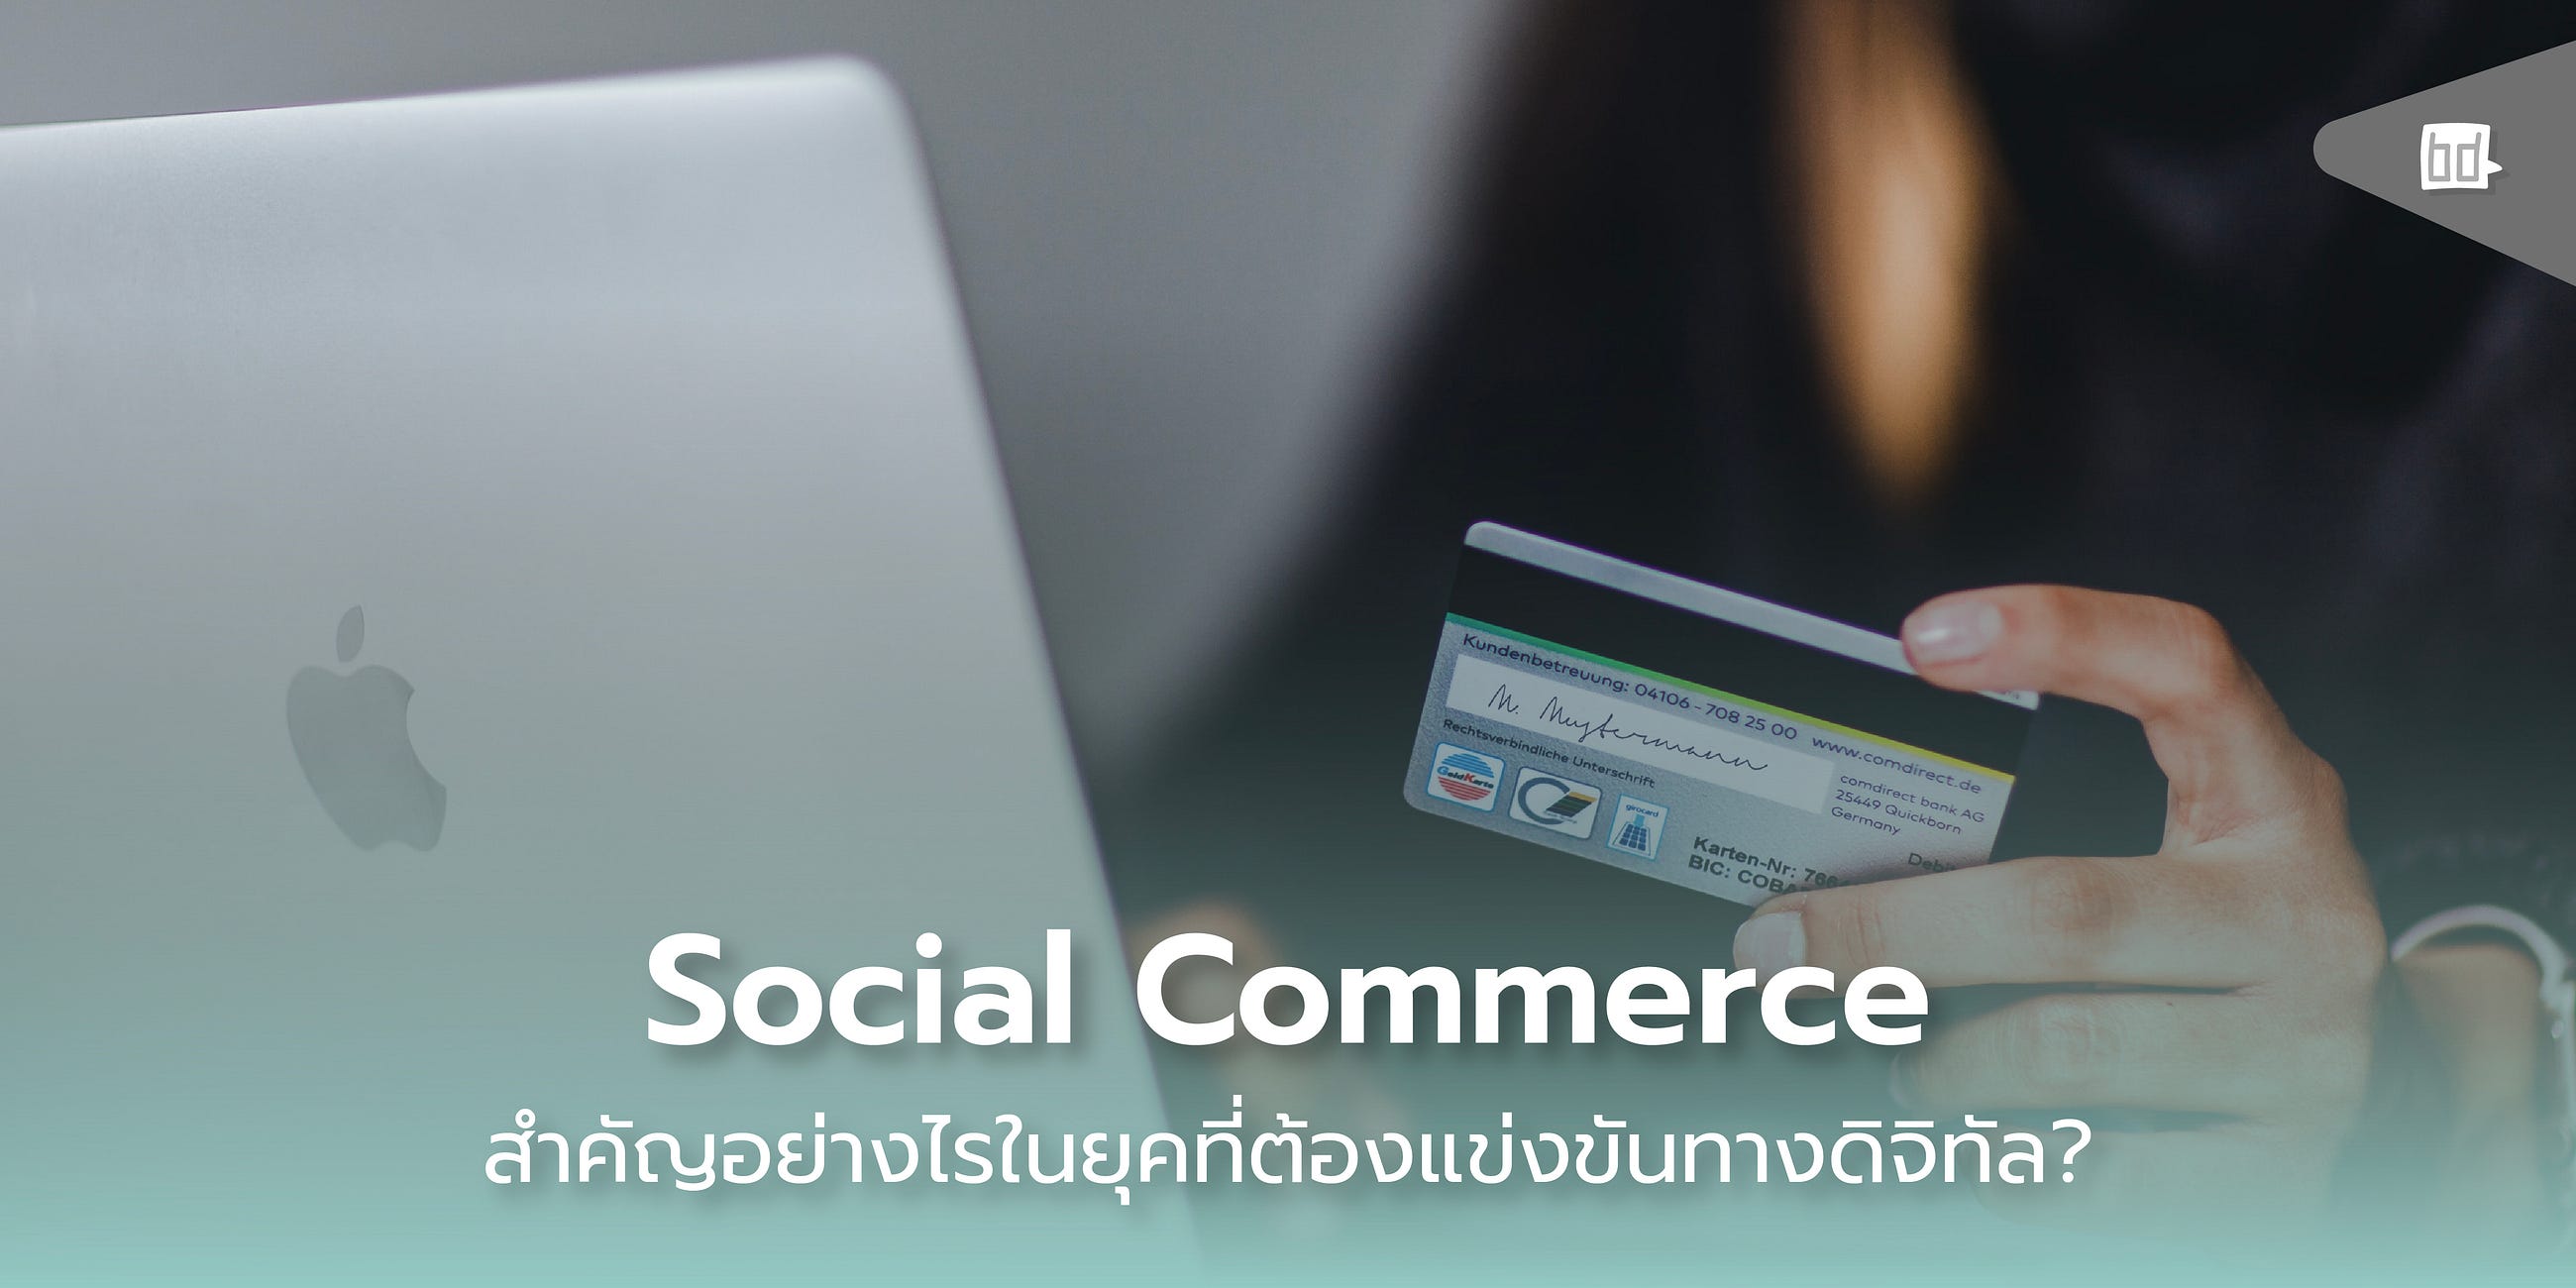 ความสำคัญของ Social Commerce กับ เทรนด์การตลาดยุคดิจิทัล